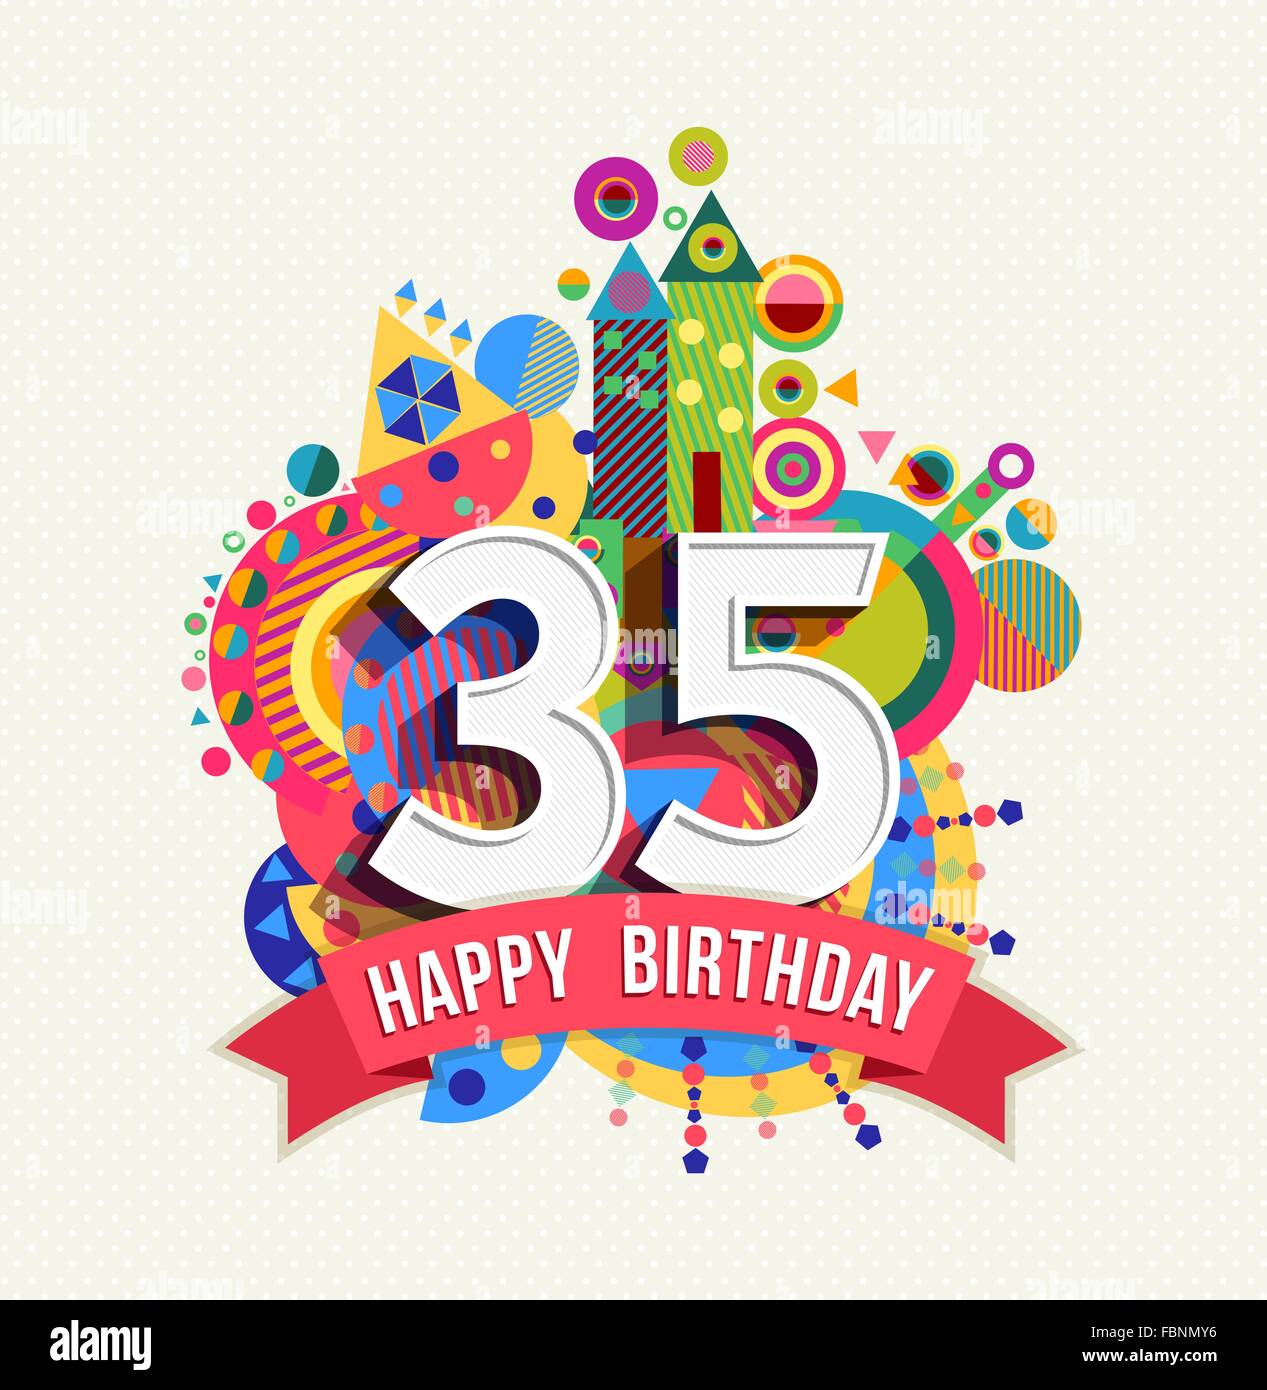 Joyeux anniversaire trente cinq 35 ans, carte de souhaits fête amusante avec étiquette de texte, nombre et géométrie colorée design. EPS10 Illustration de Vecteur